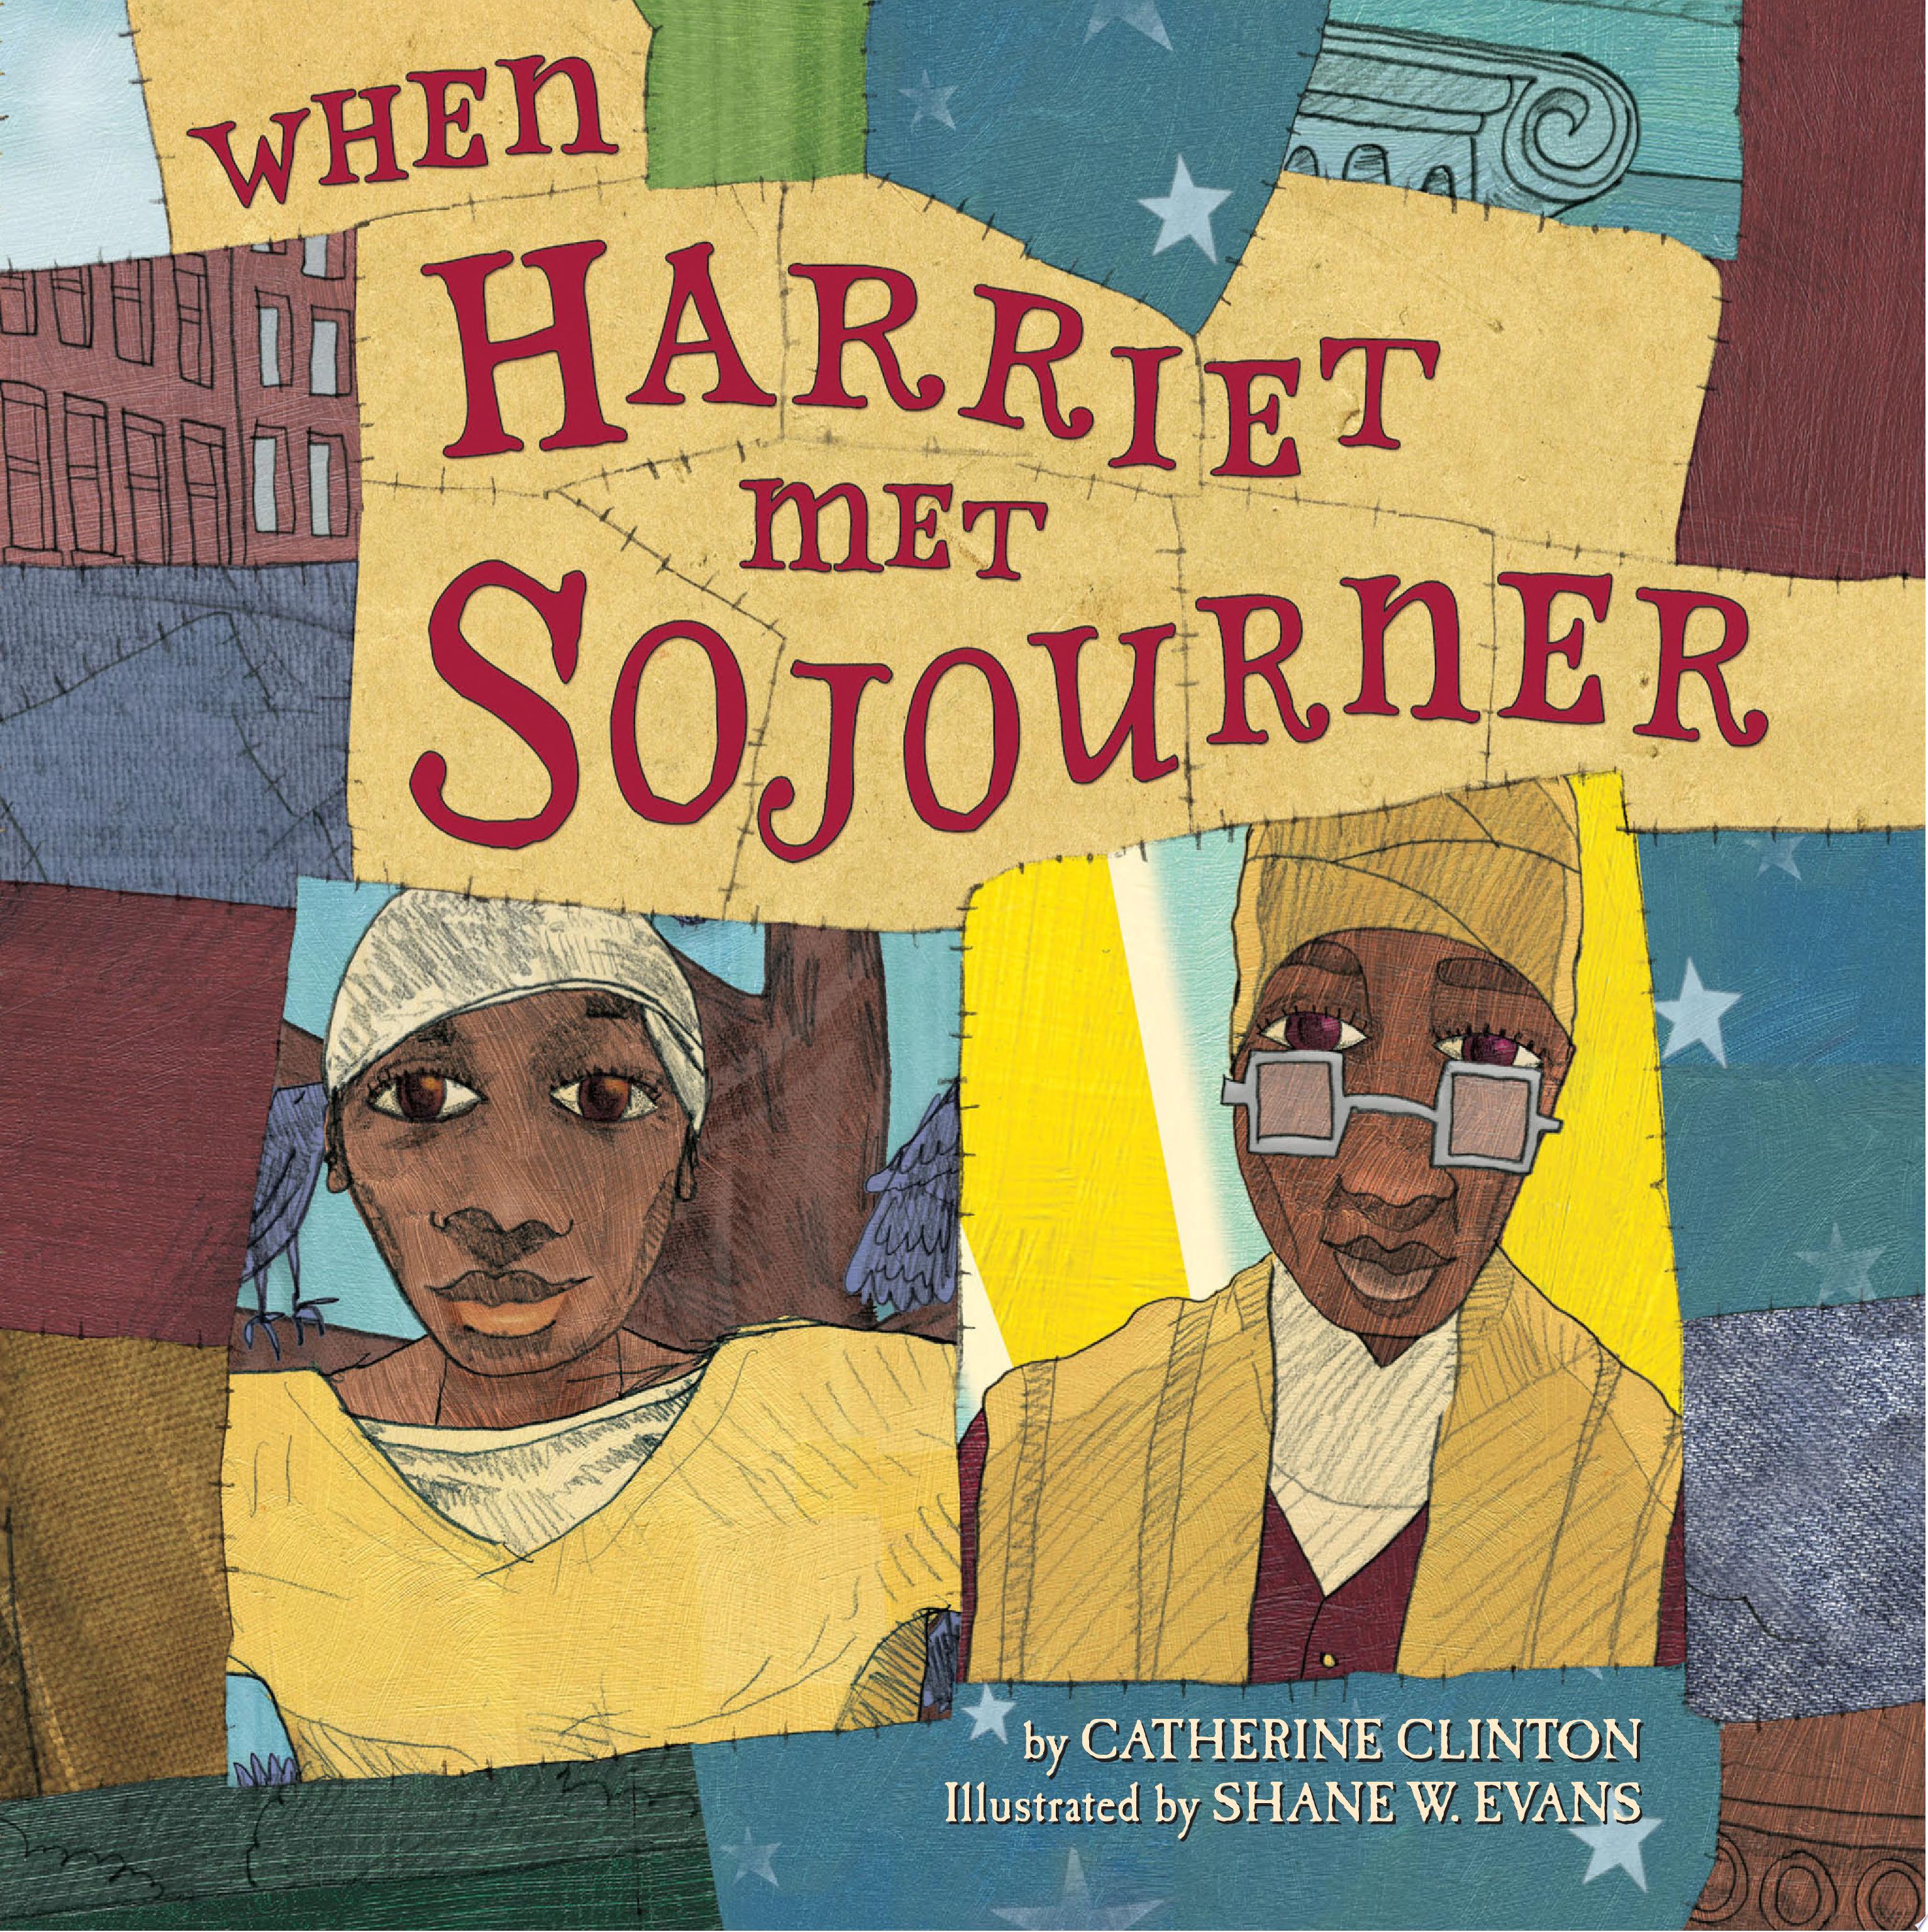 Image for "When Harriet Met Sojourner"